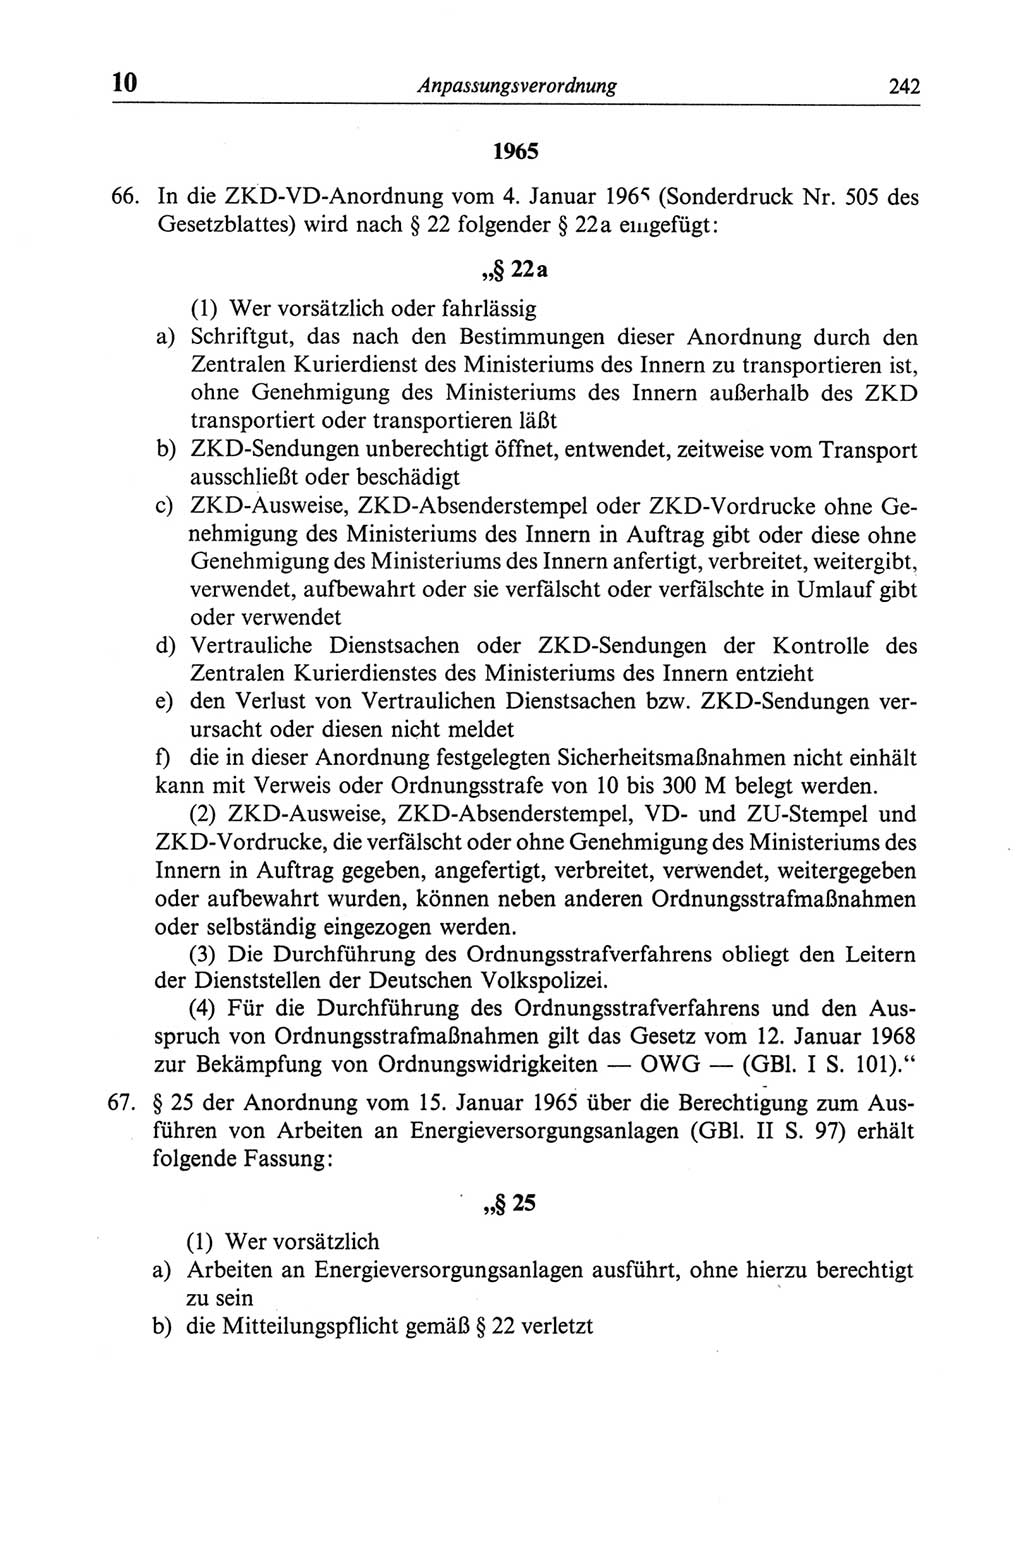 Strafgesetzbuch (StGB) der Deutschen Demokratischen Republik (DDR) und angrenzende Gesetze und Bestimmungen 1968, Seite 242 (StGB Ges. Best. DDR 1968, S. 242)